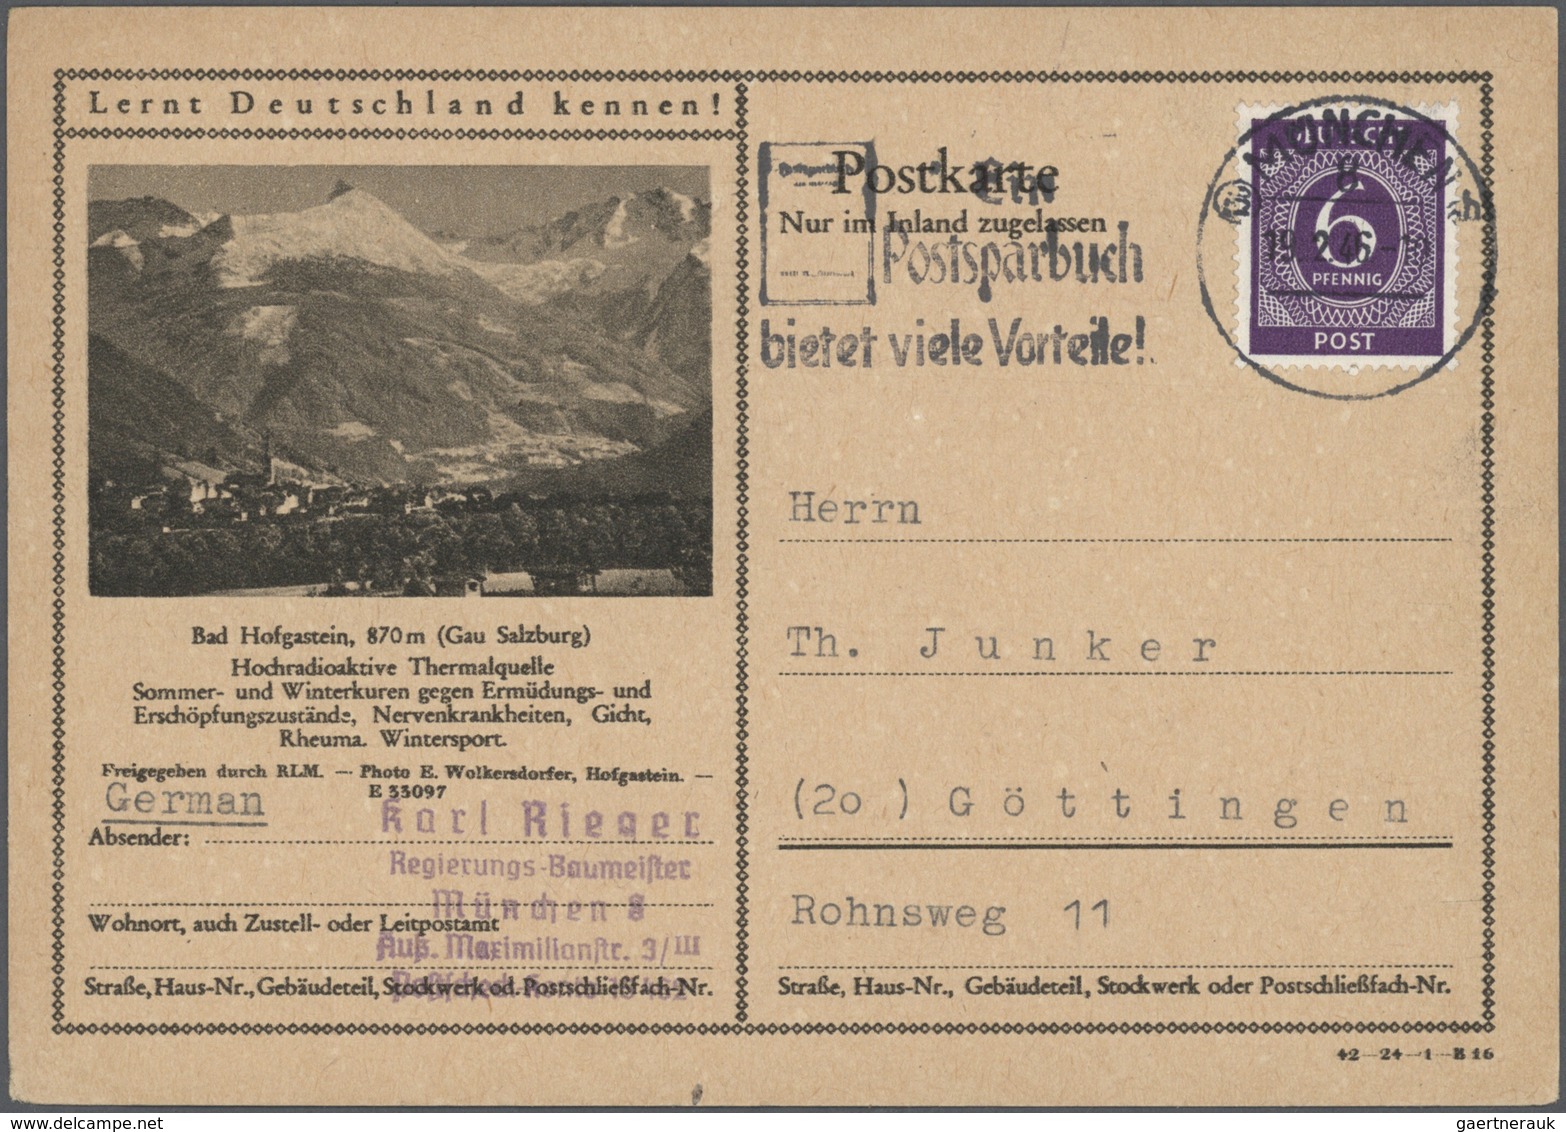 32132 Deutschland nach 1945: 1945/1990, interessanter Posten von ca. 270 Belegen mit zahlreichen Ganzsache